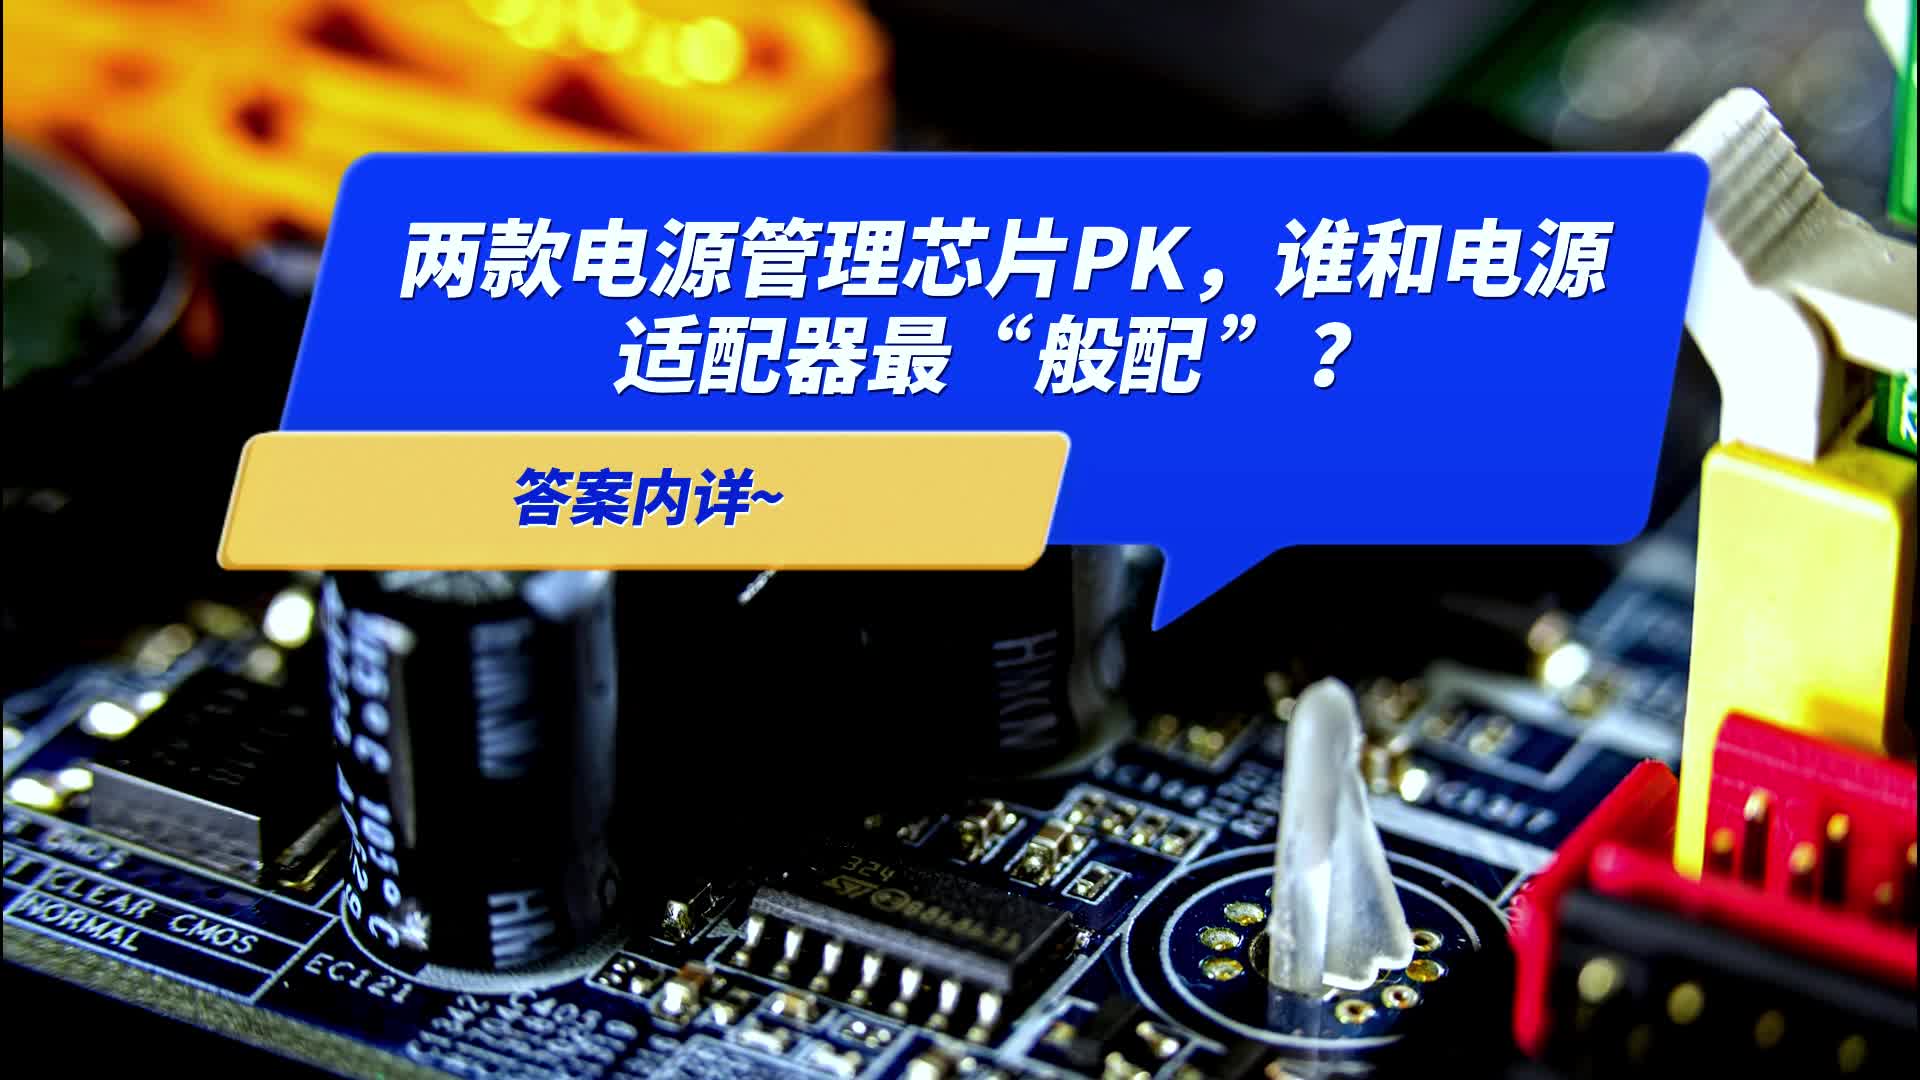 两款电源管理芯片PK，谁和电源适配器最“般配”？答案内详~ #电源管理芯片 #充电器 #适配器 #产品方案 